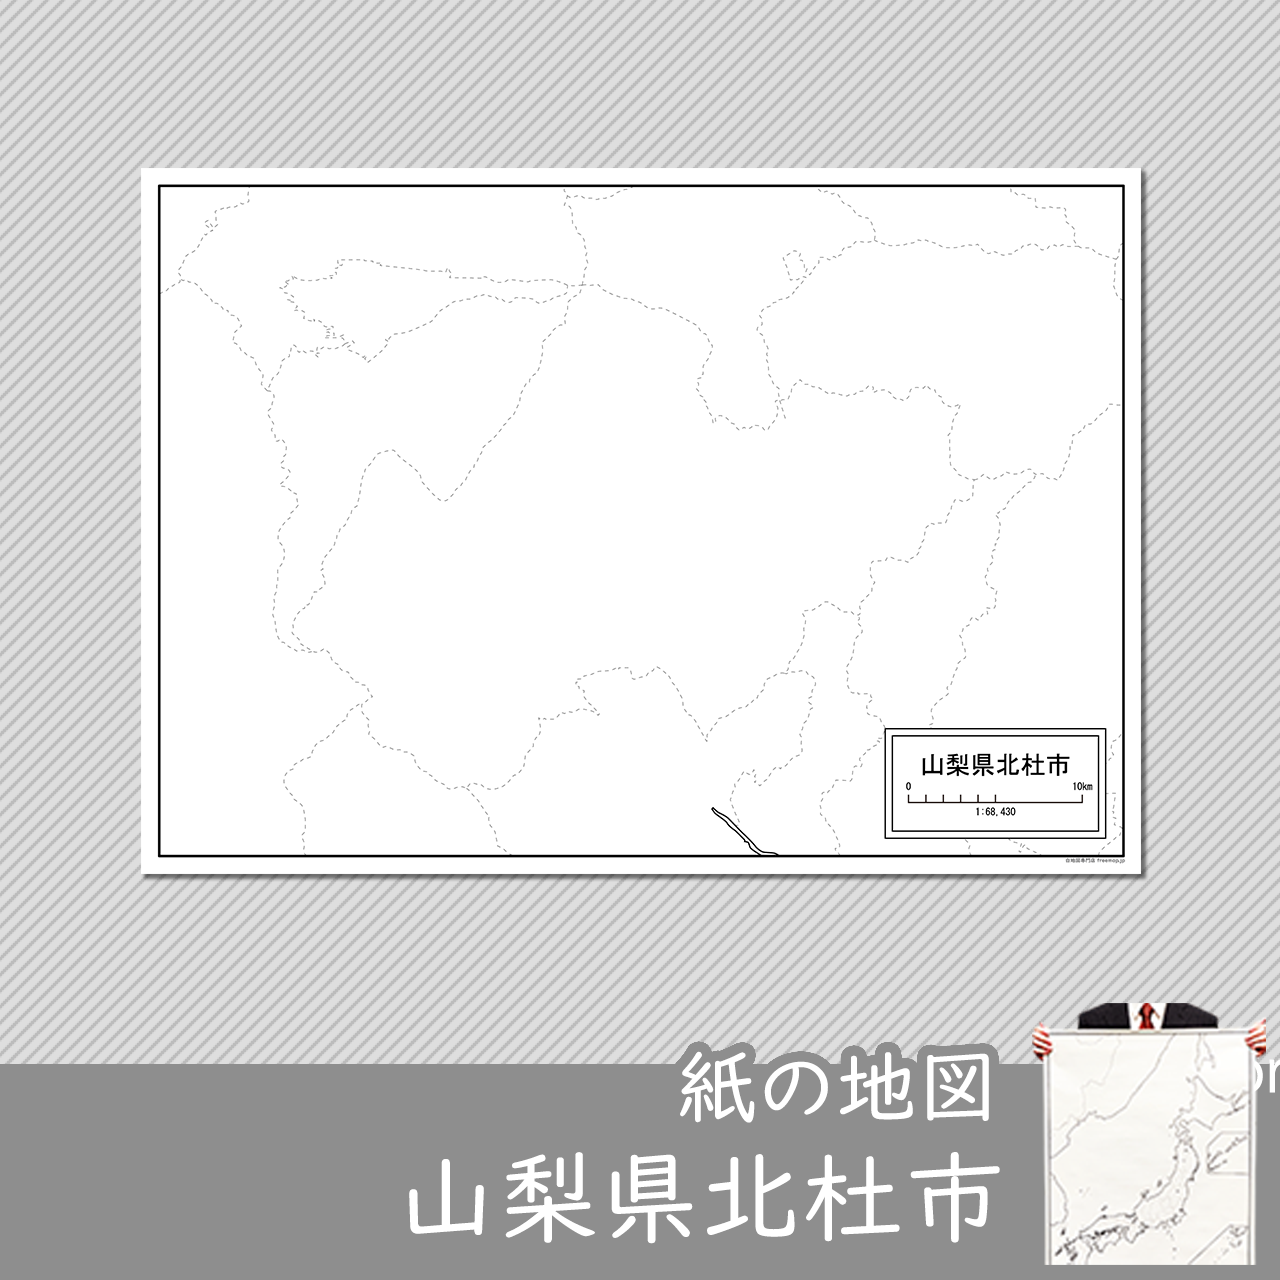 北杜市の紙の白地図のサムネイル